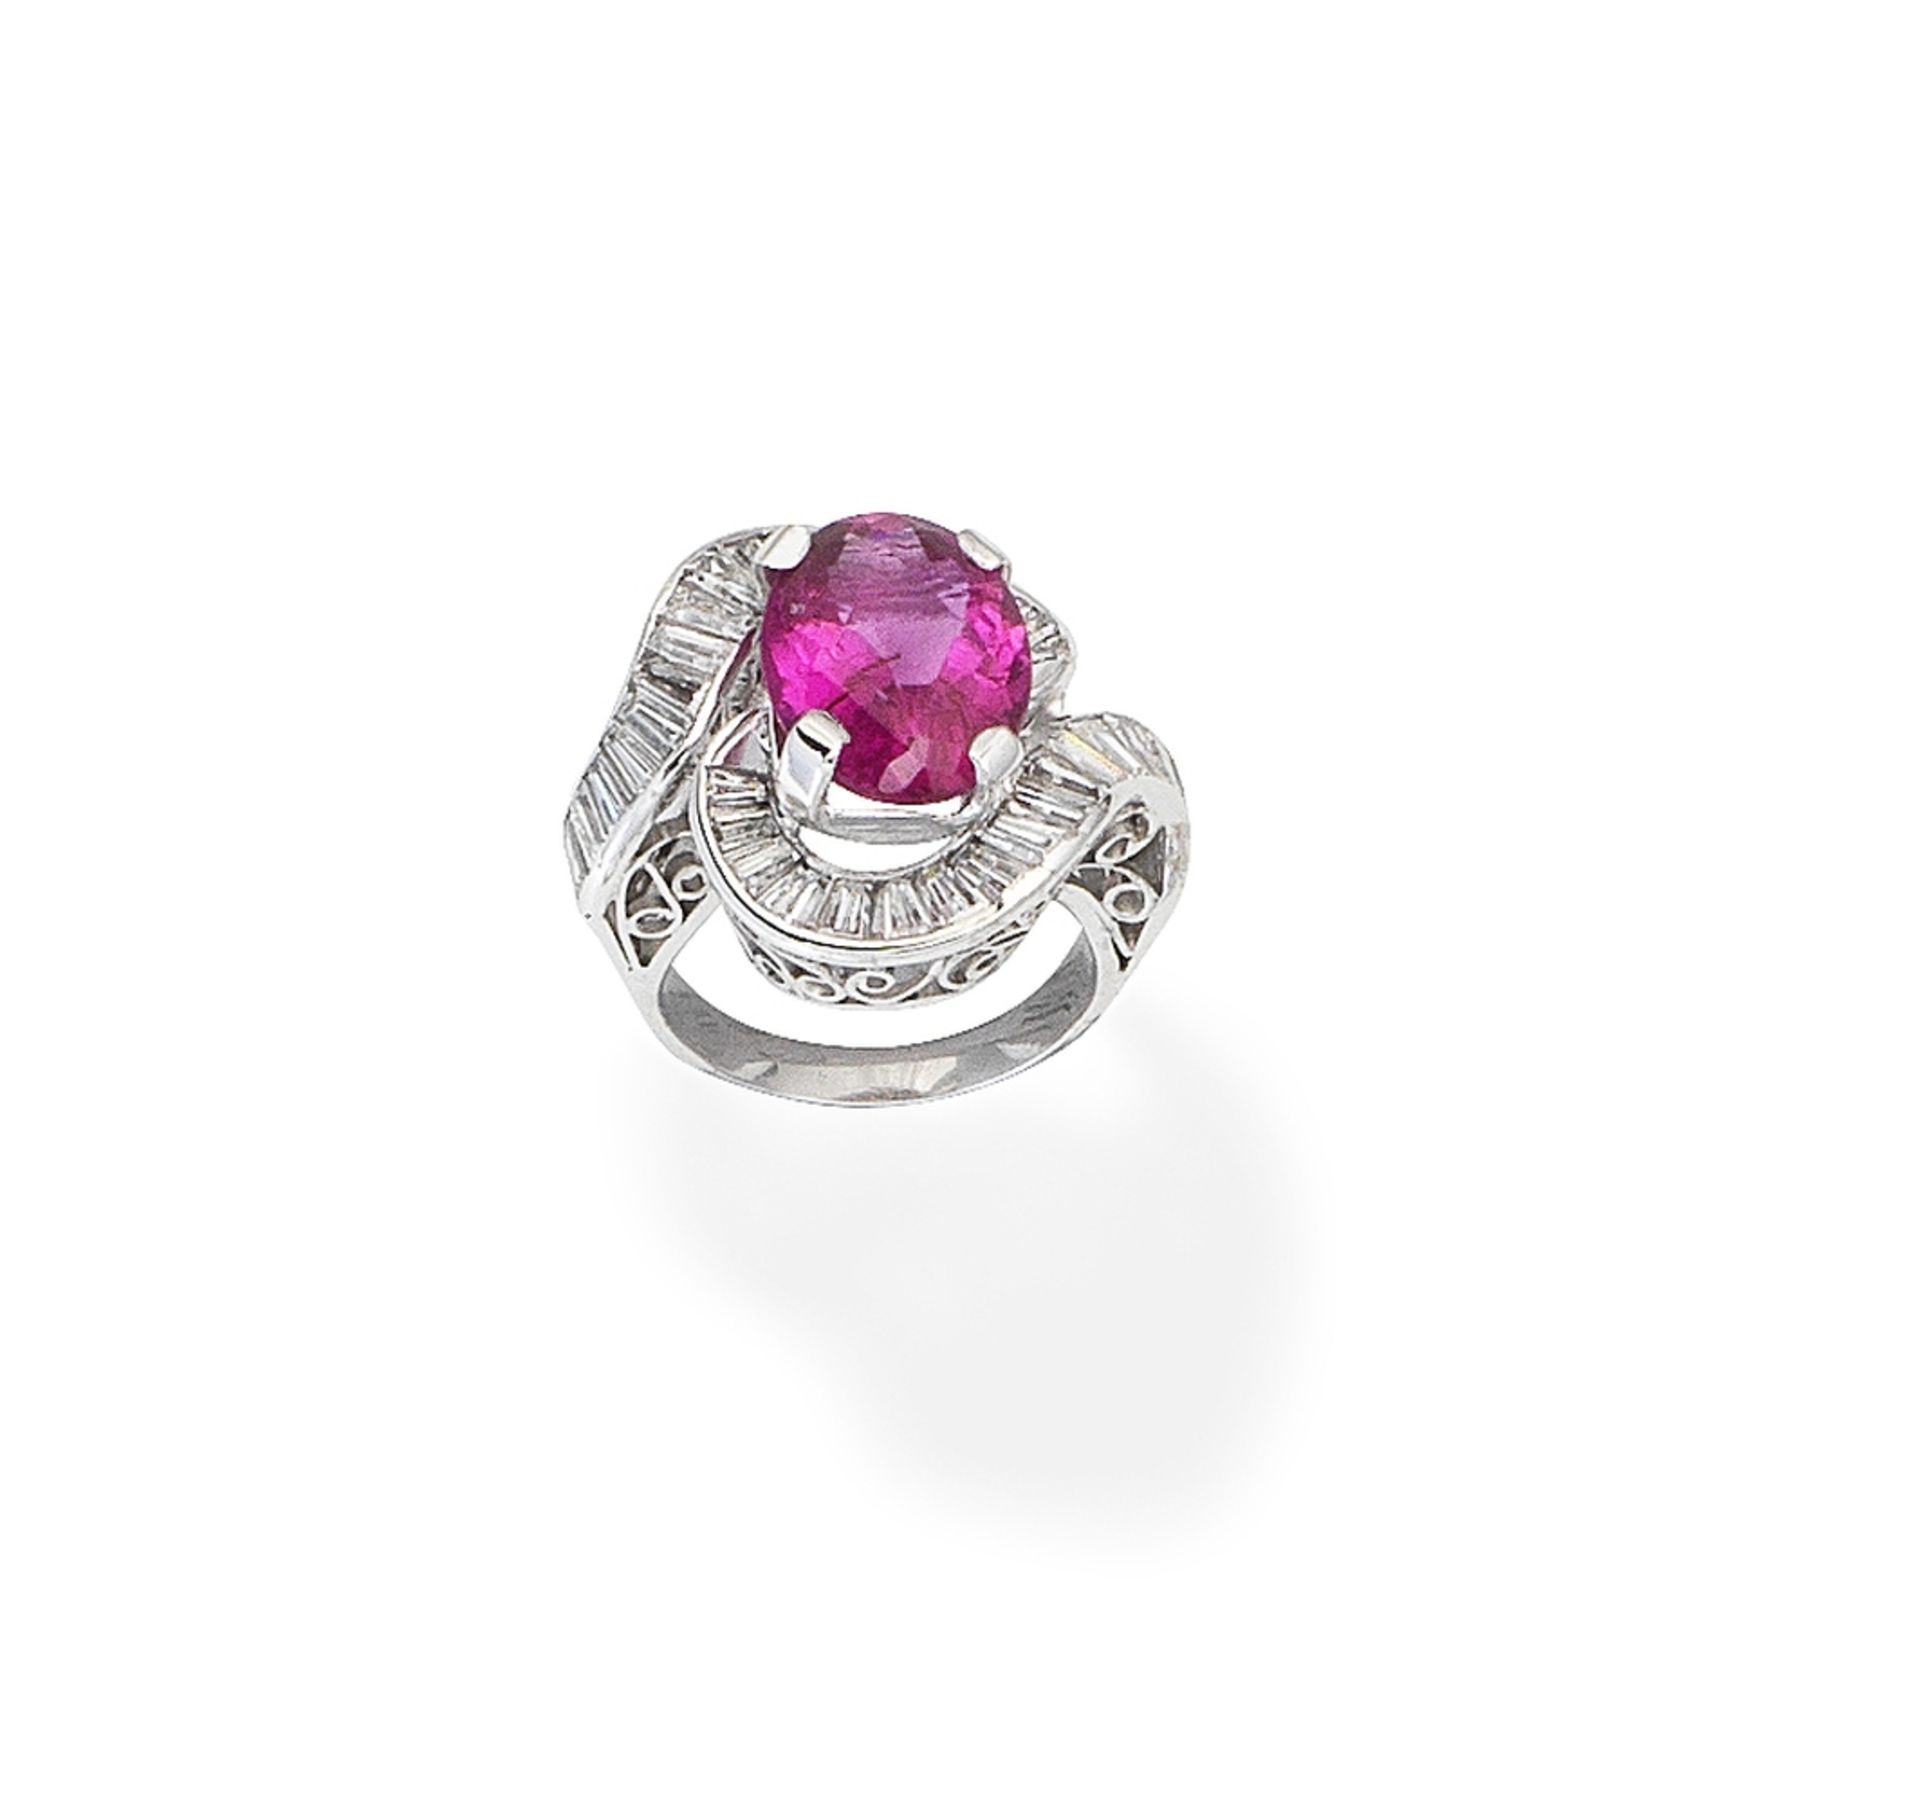 Pink tourmaline and diamond dress ring